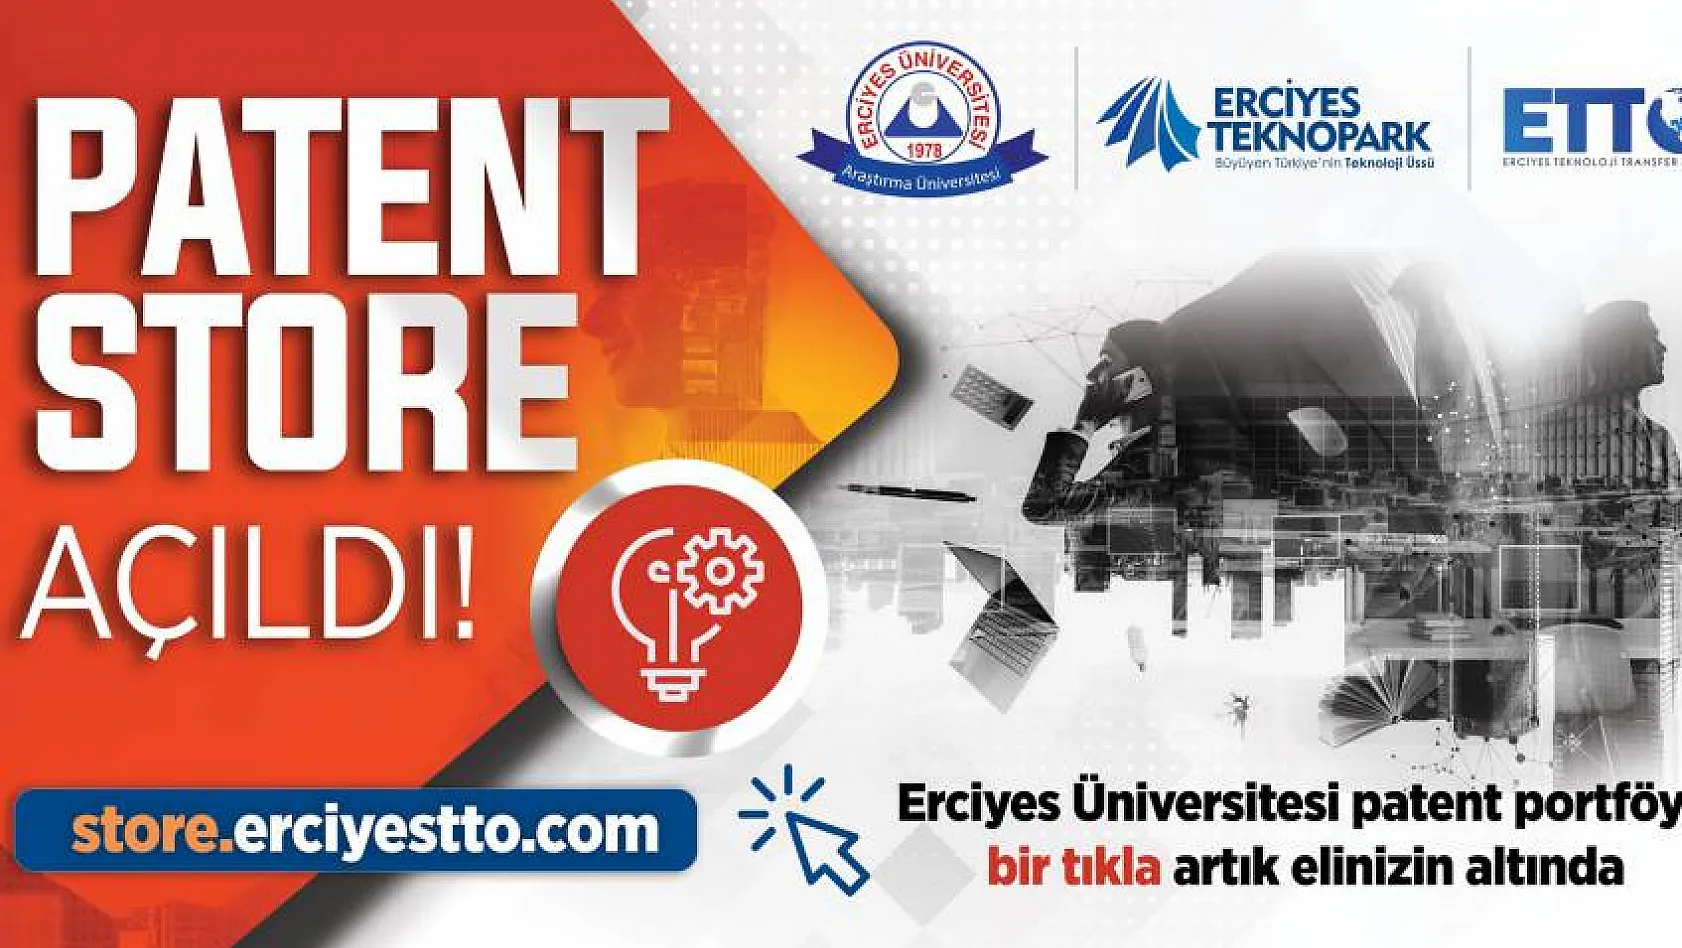 Erciyes Üniversitesi Patent Portföyü Bir Tıkla Artık Elinizin Altında